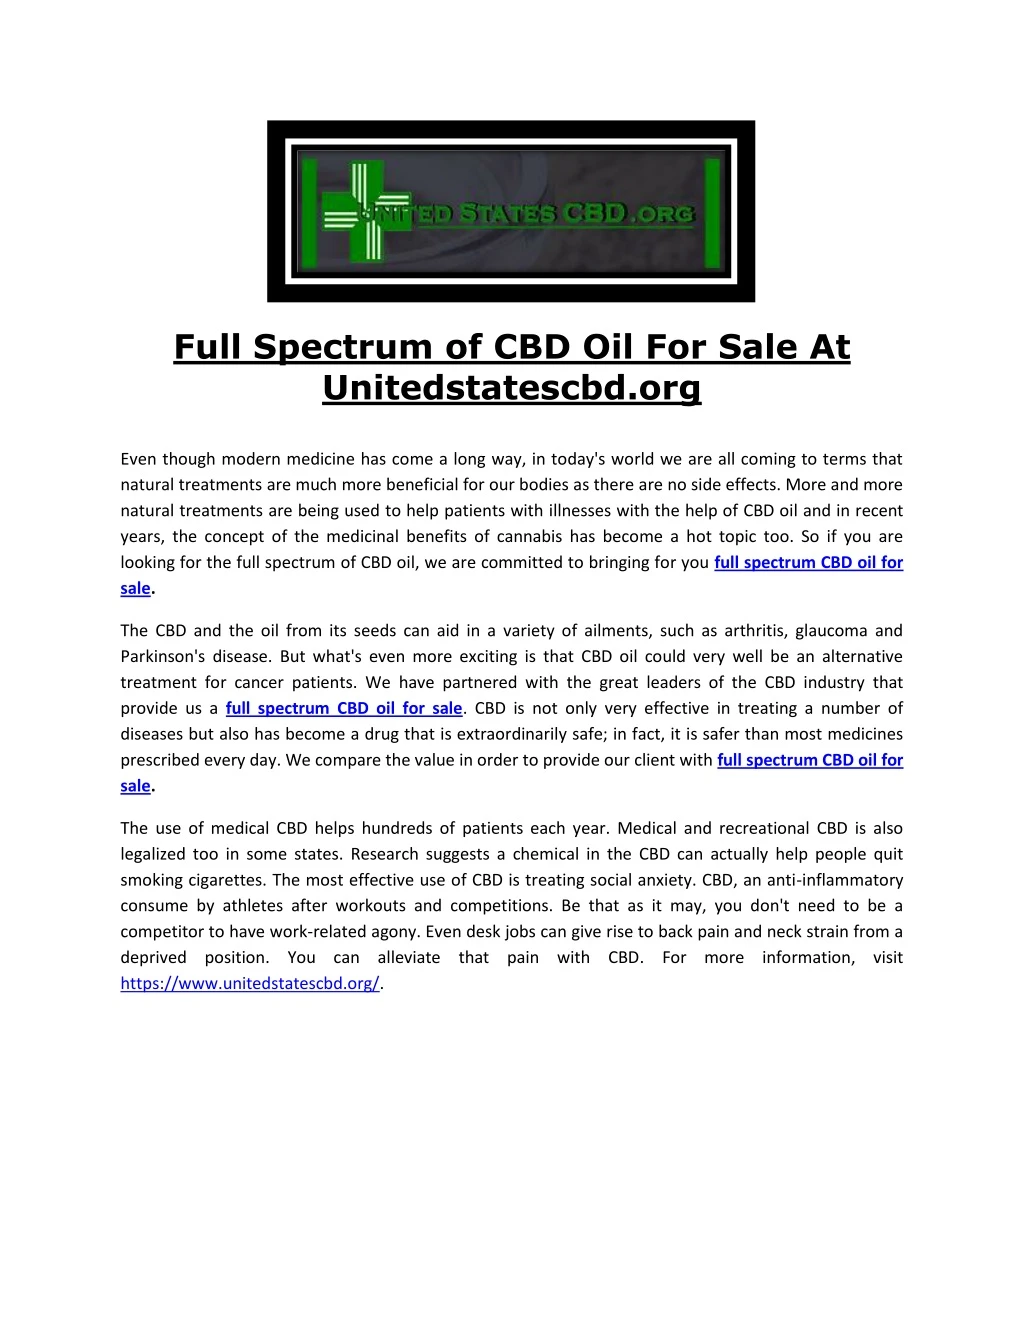 full spectrum of cbd oil for sale